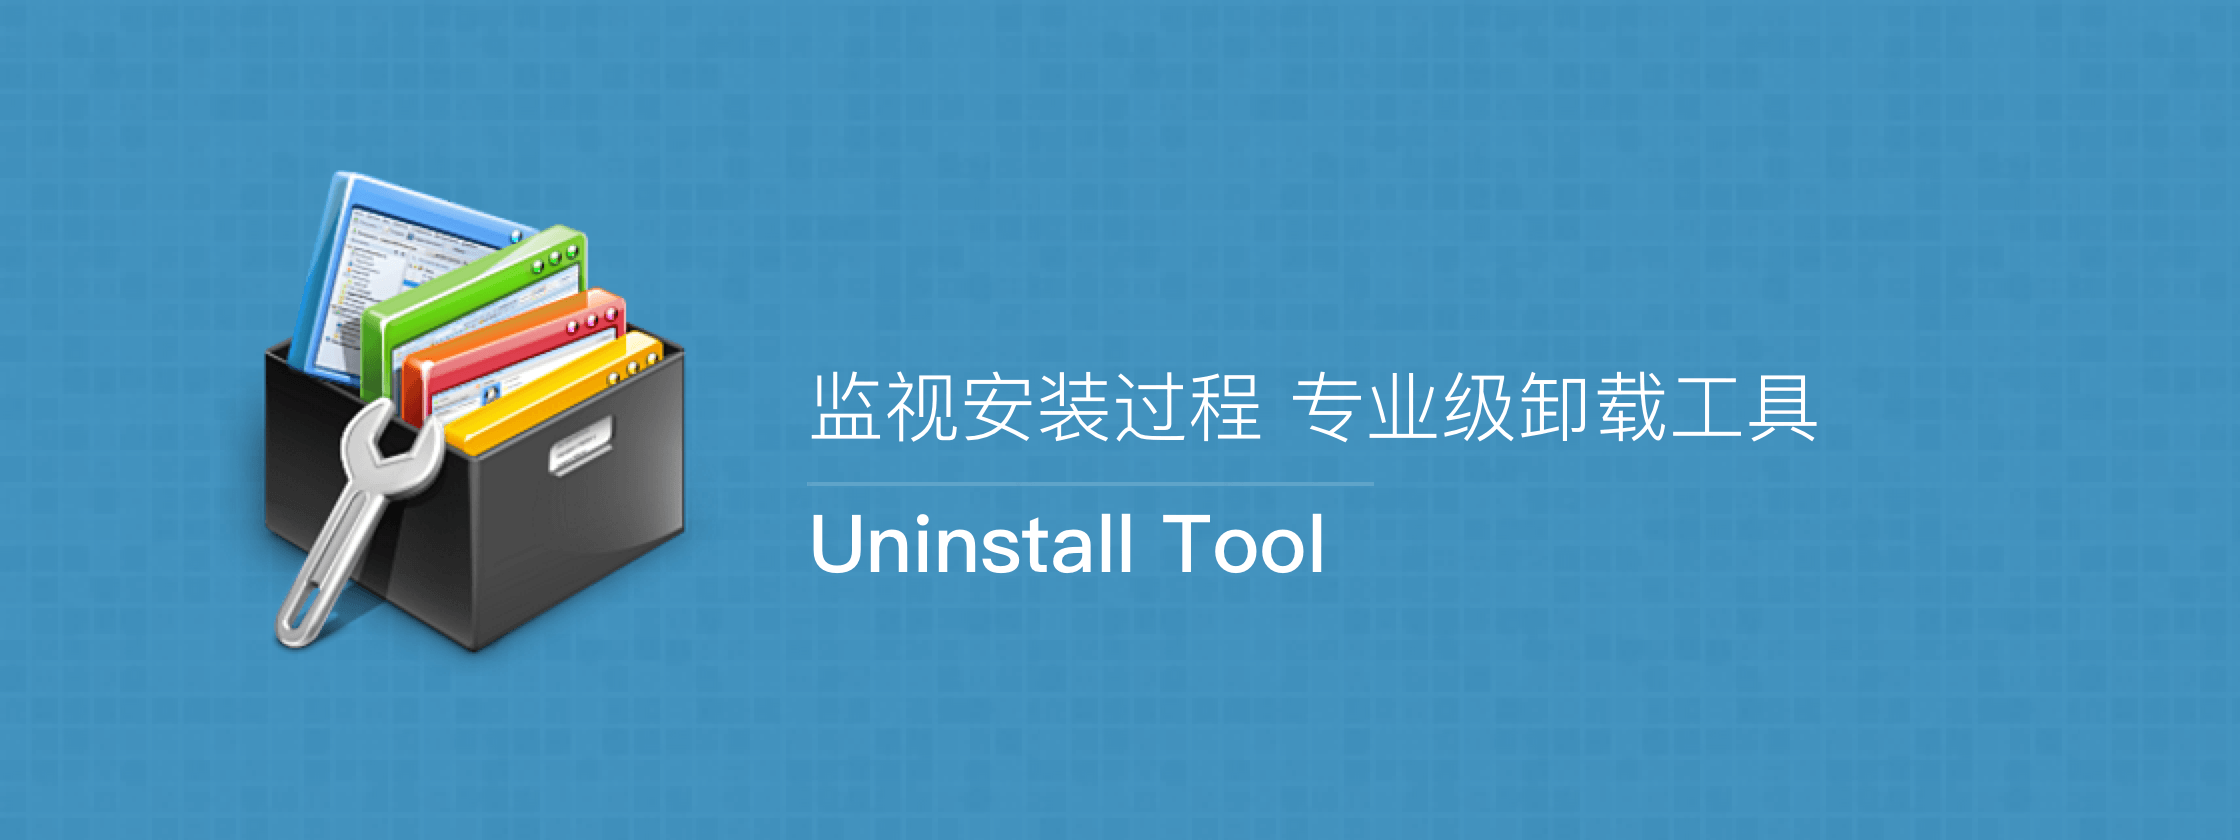 Uninstall Tool 3.7.3.5720 简体中文绿色版（可监控安装过程，专业级卸载软件）